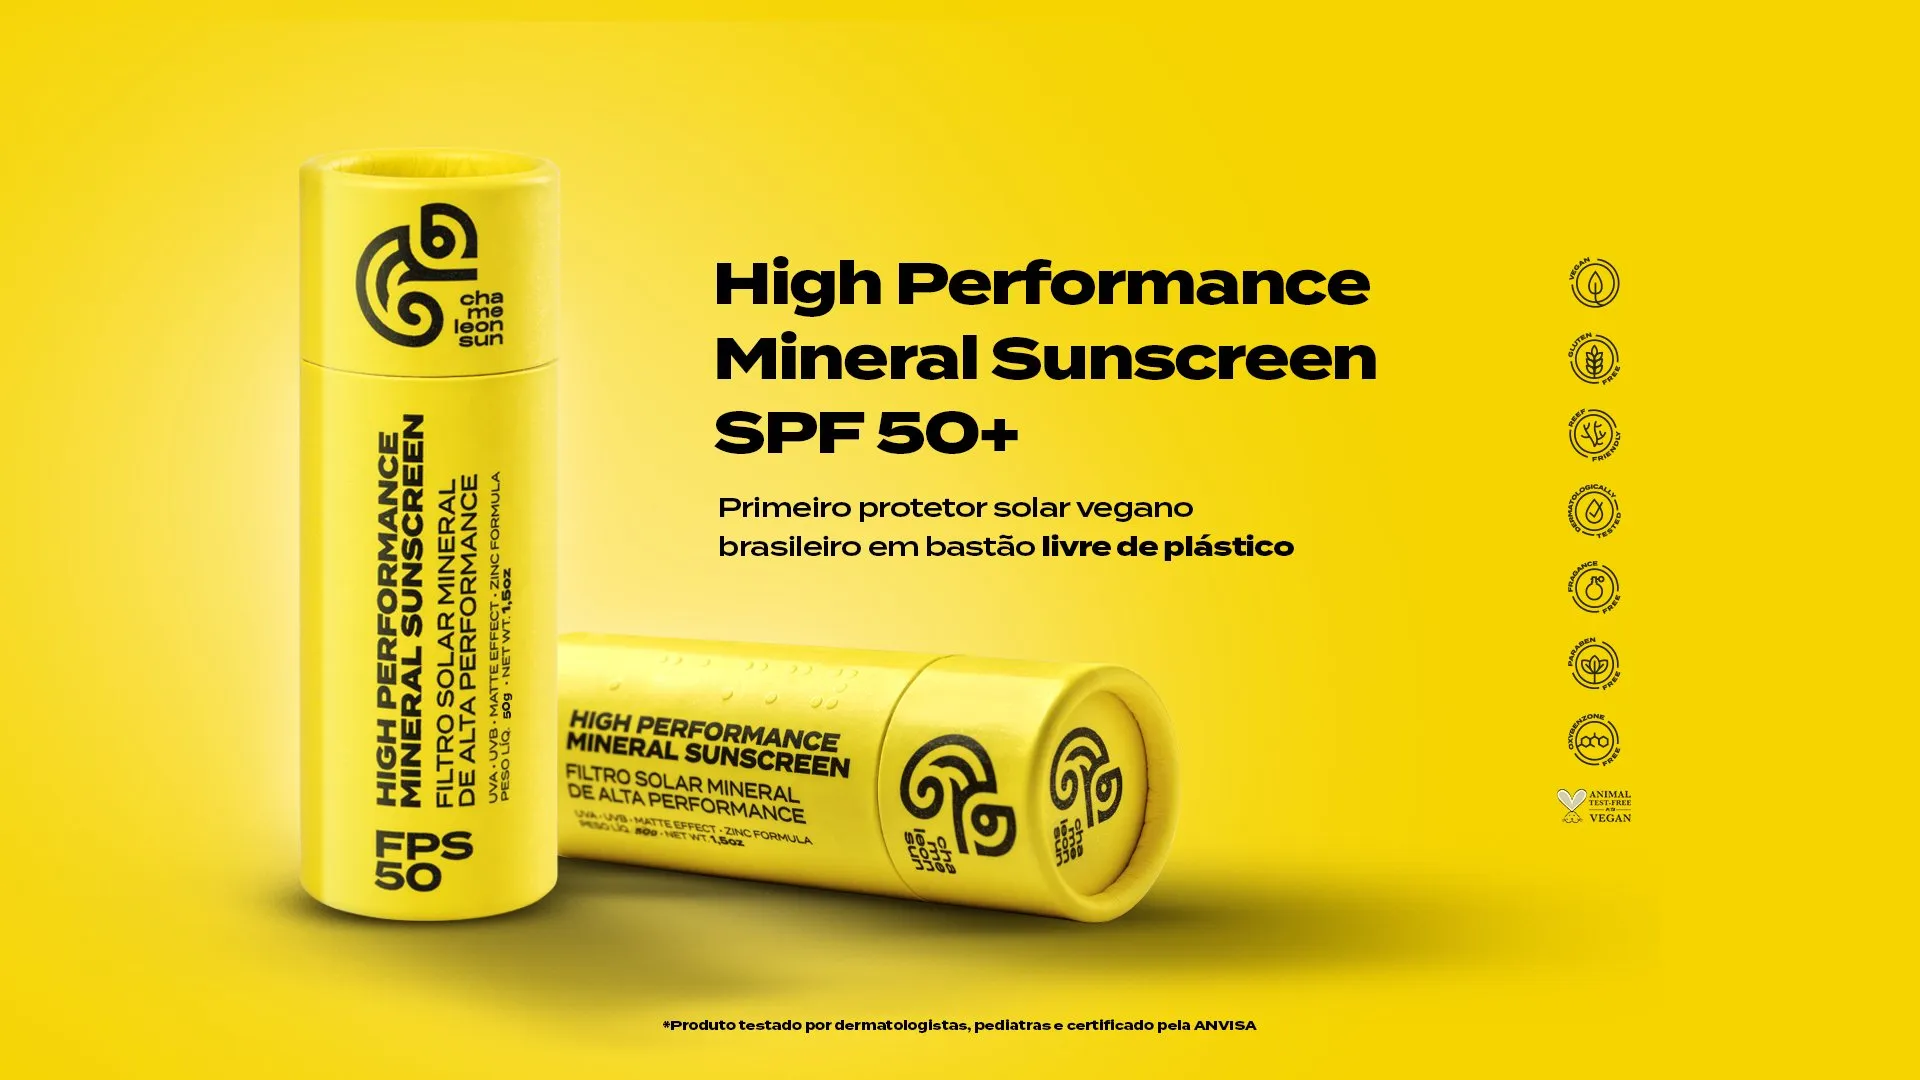 High Performance Mineral Sunscreen SPF 50+ da Chameleon Sun